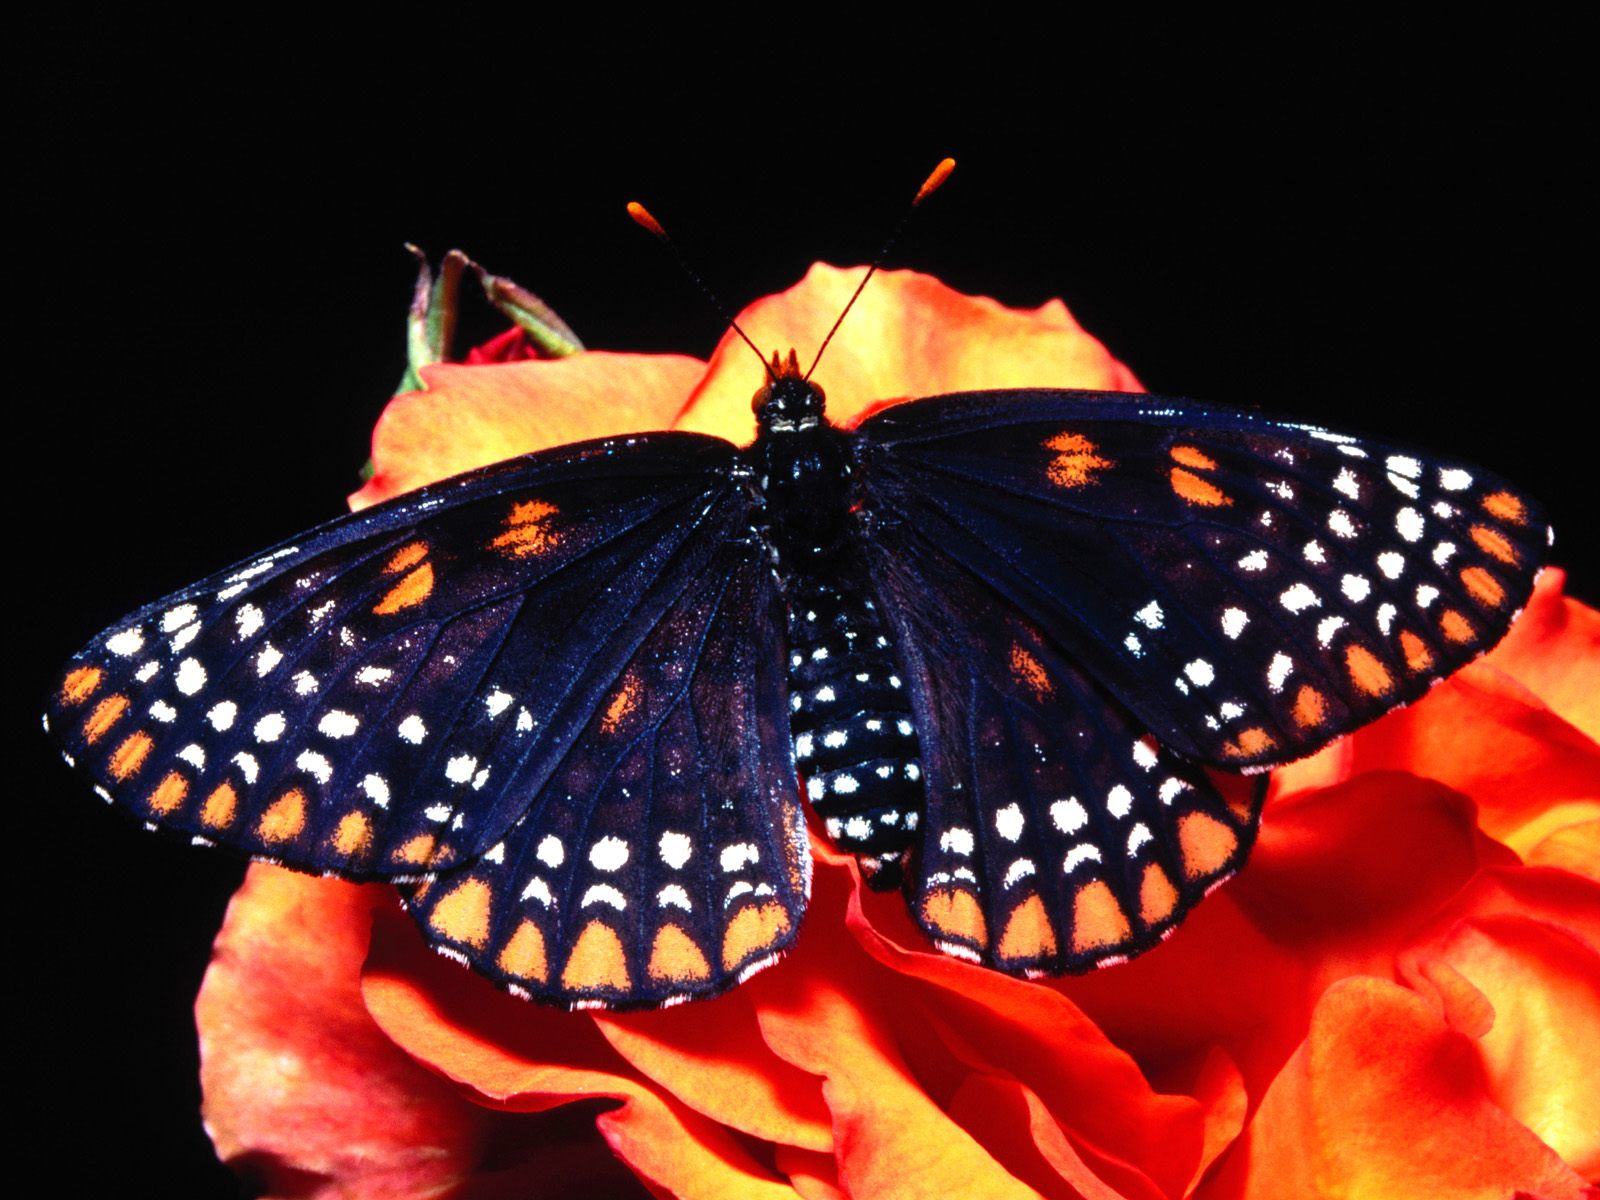 Бабочка оранжевая с черными